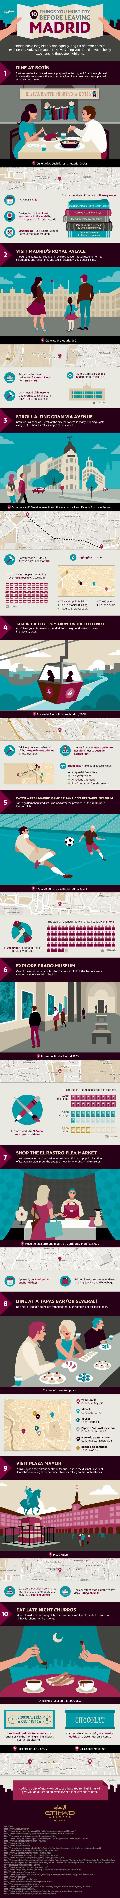 Etihad Infographic